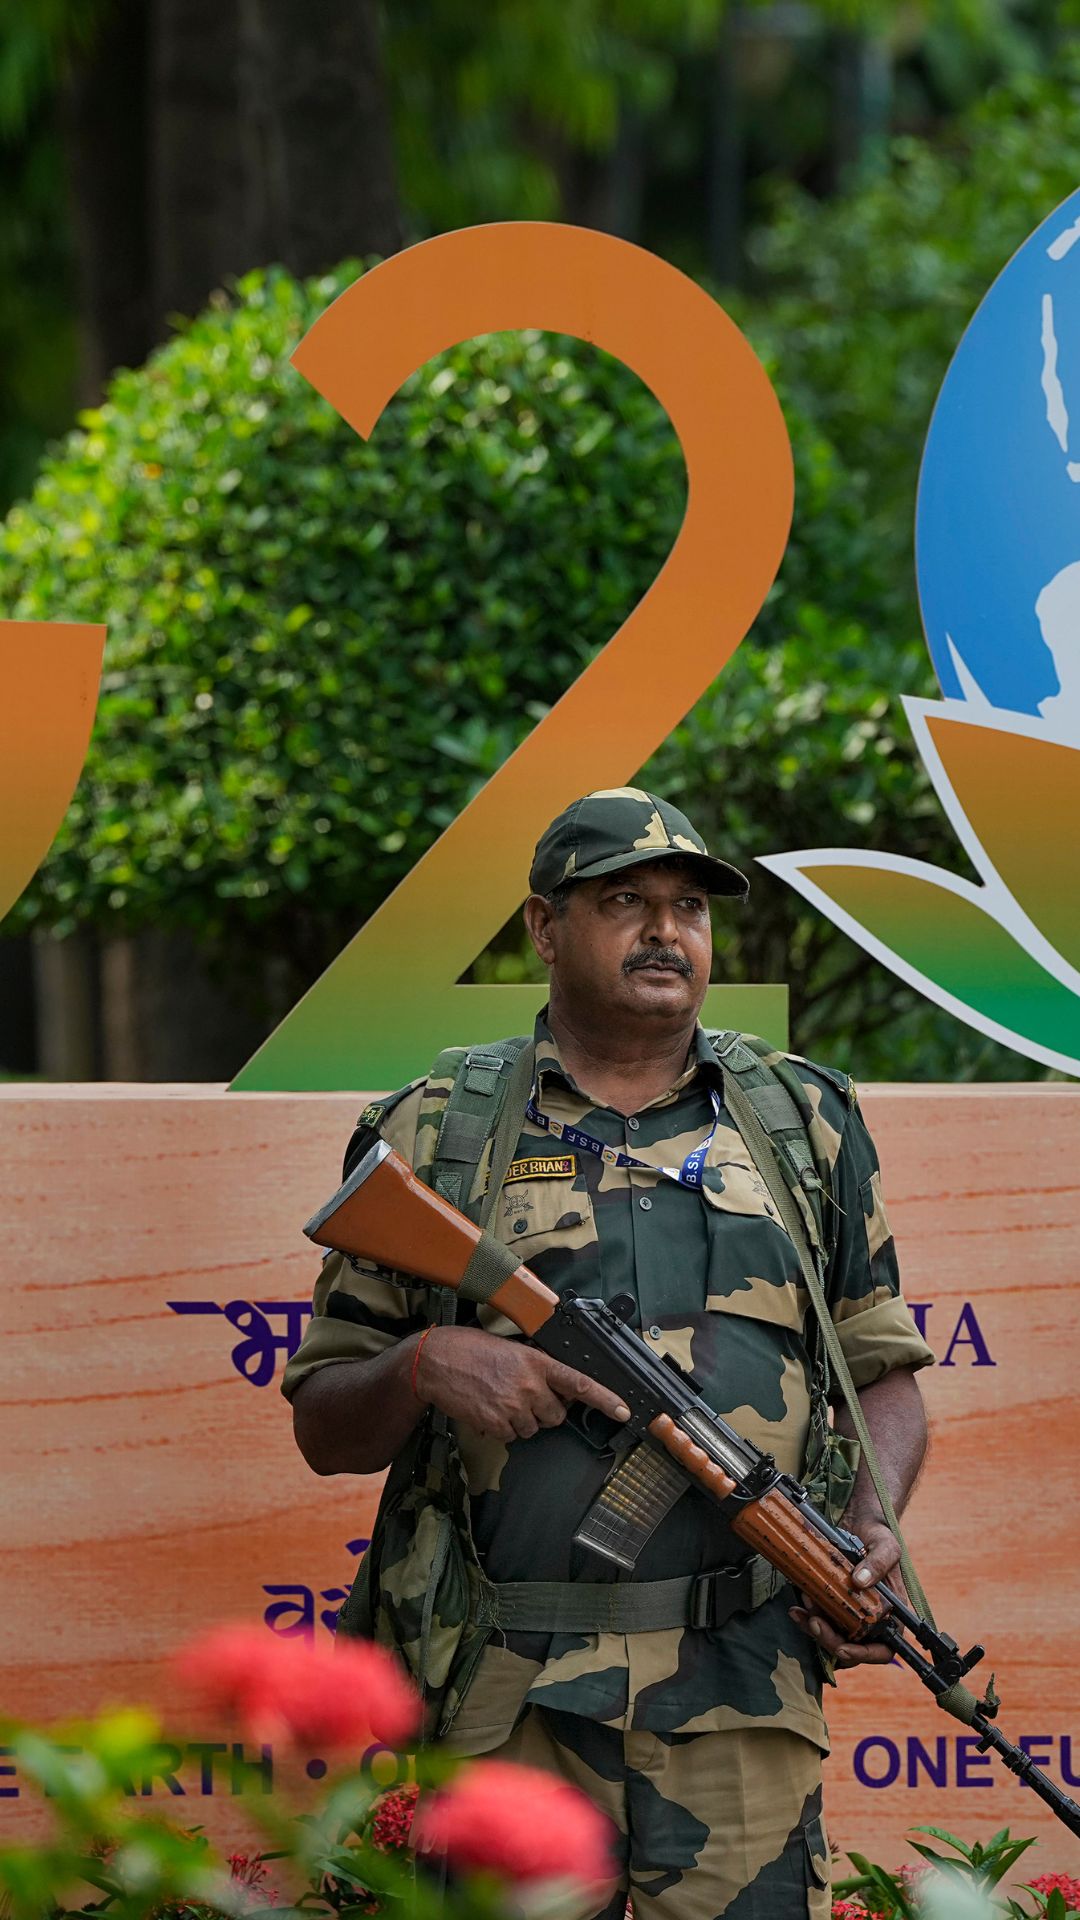 G20 सम्मेलन के लिए दिल्ली में चप्पे-चप्पे पर तैनात सुरक्षाबलों के जवान, देखें तस्वीरें 